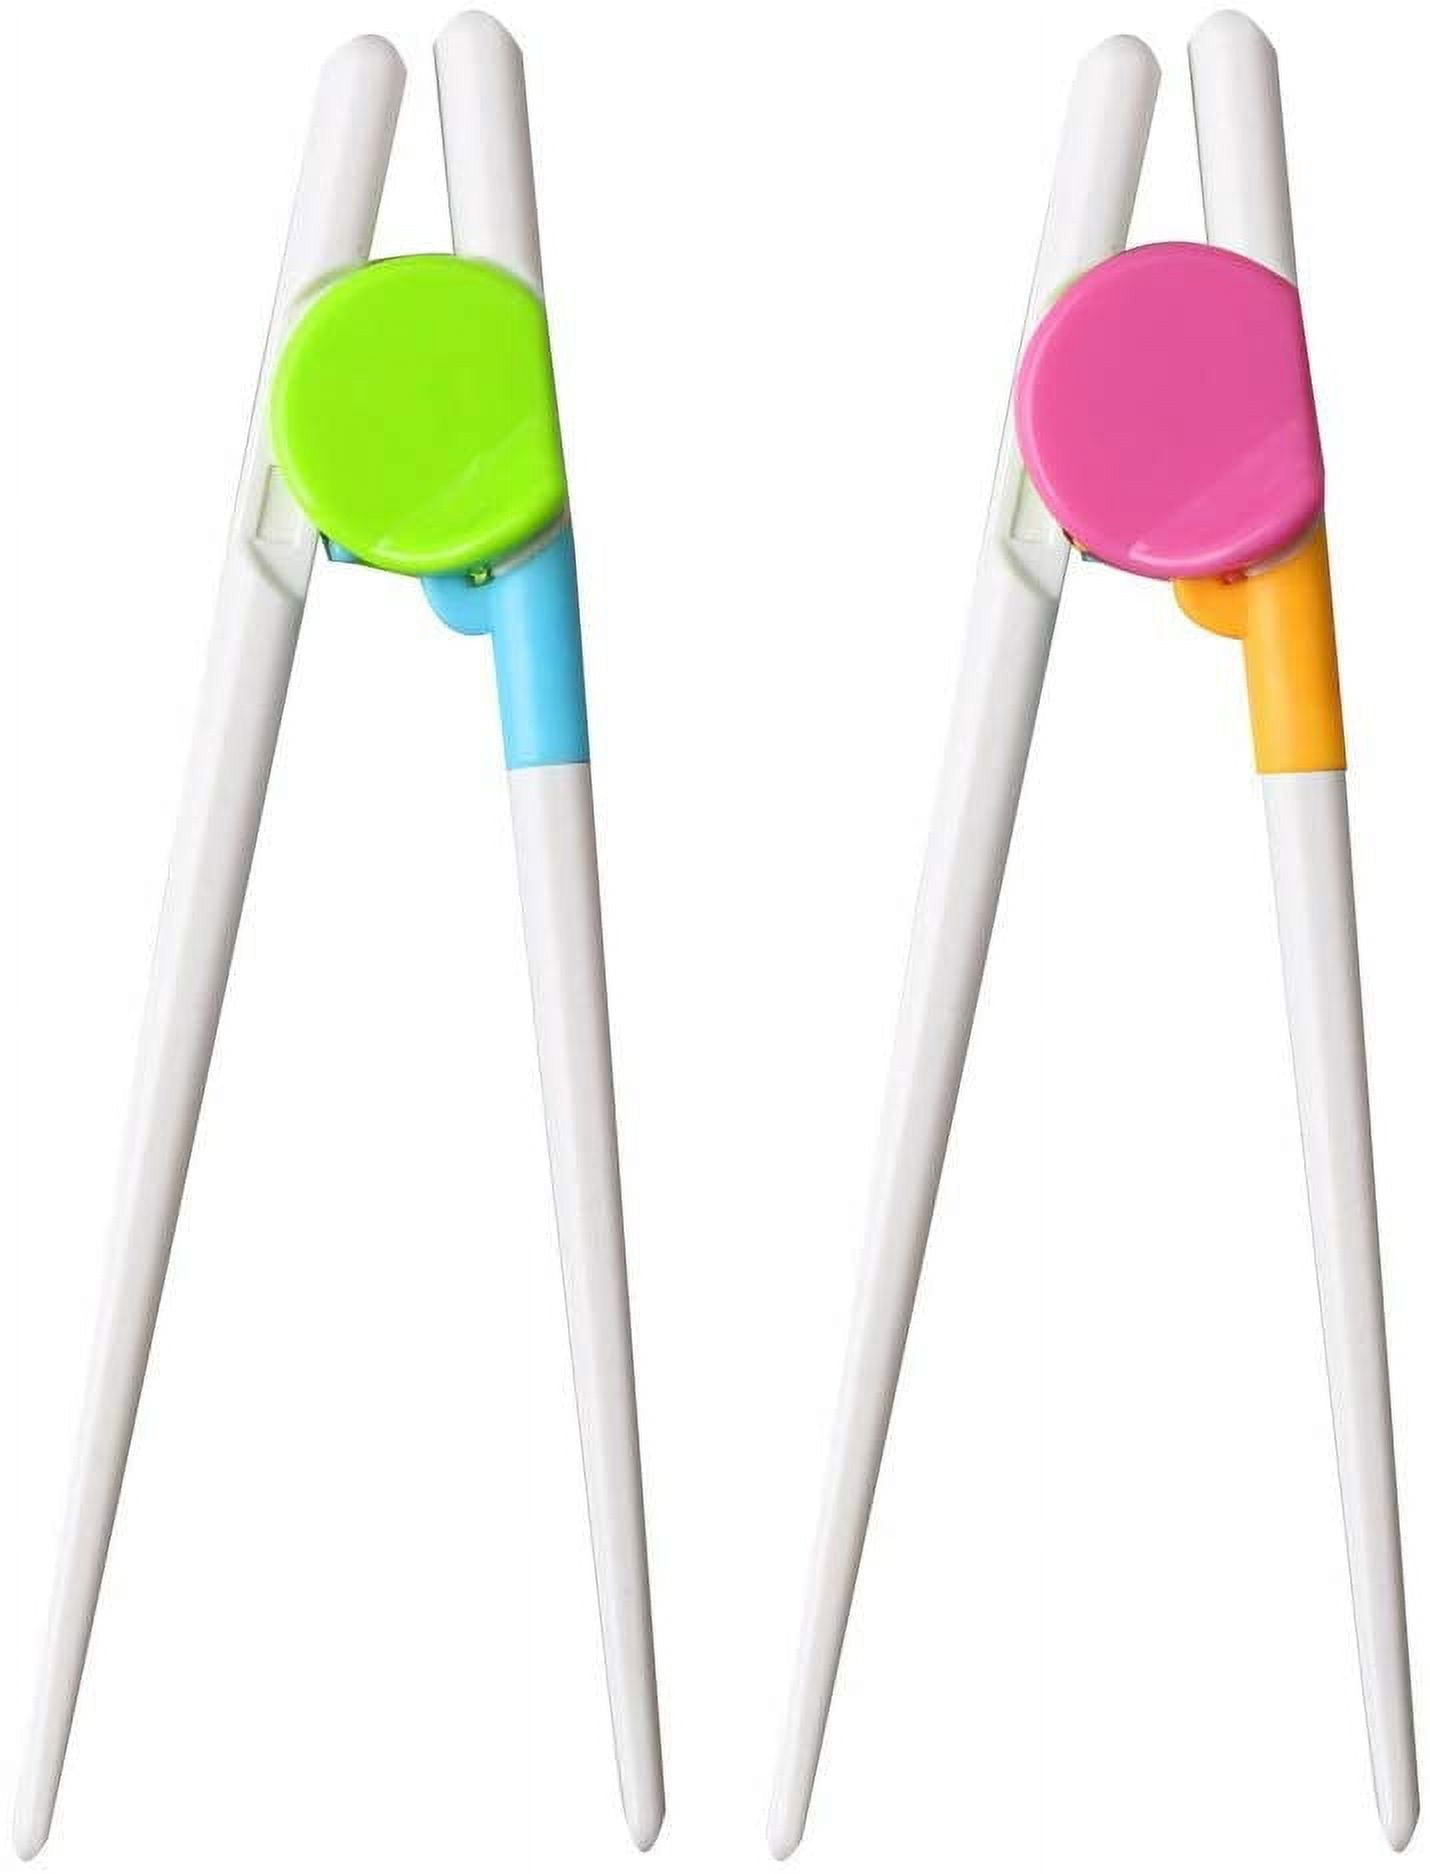 2 Pairs Kids Children Training Chopsticks Reusable Learning Chopsticks